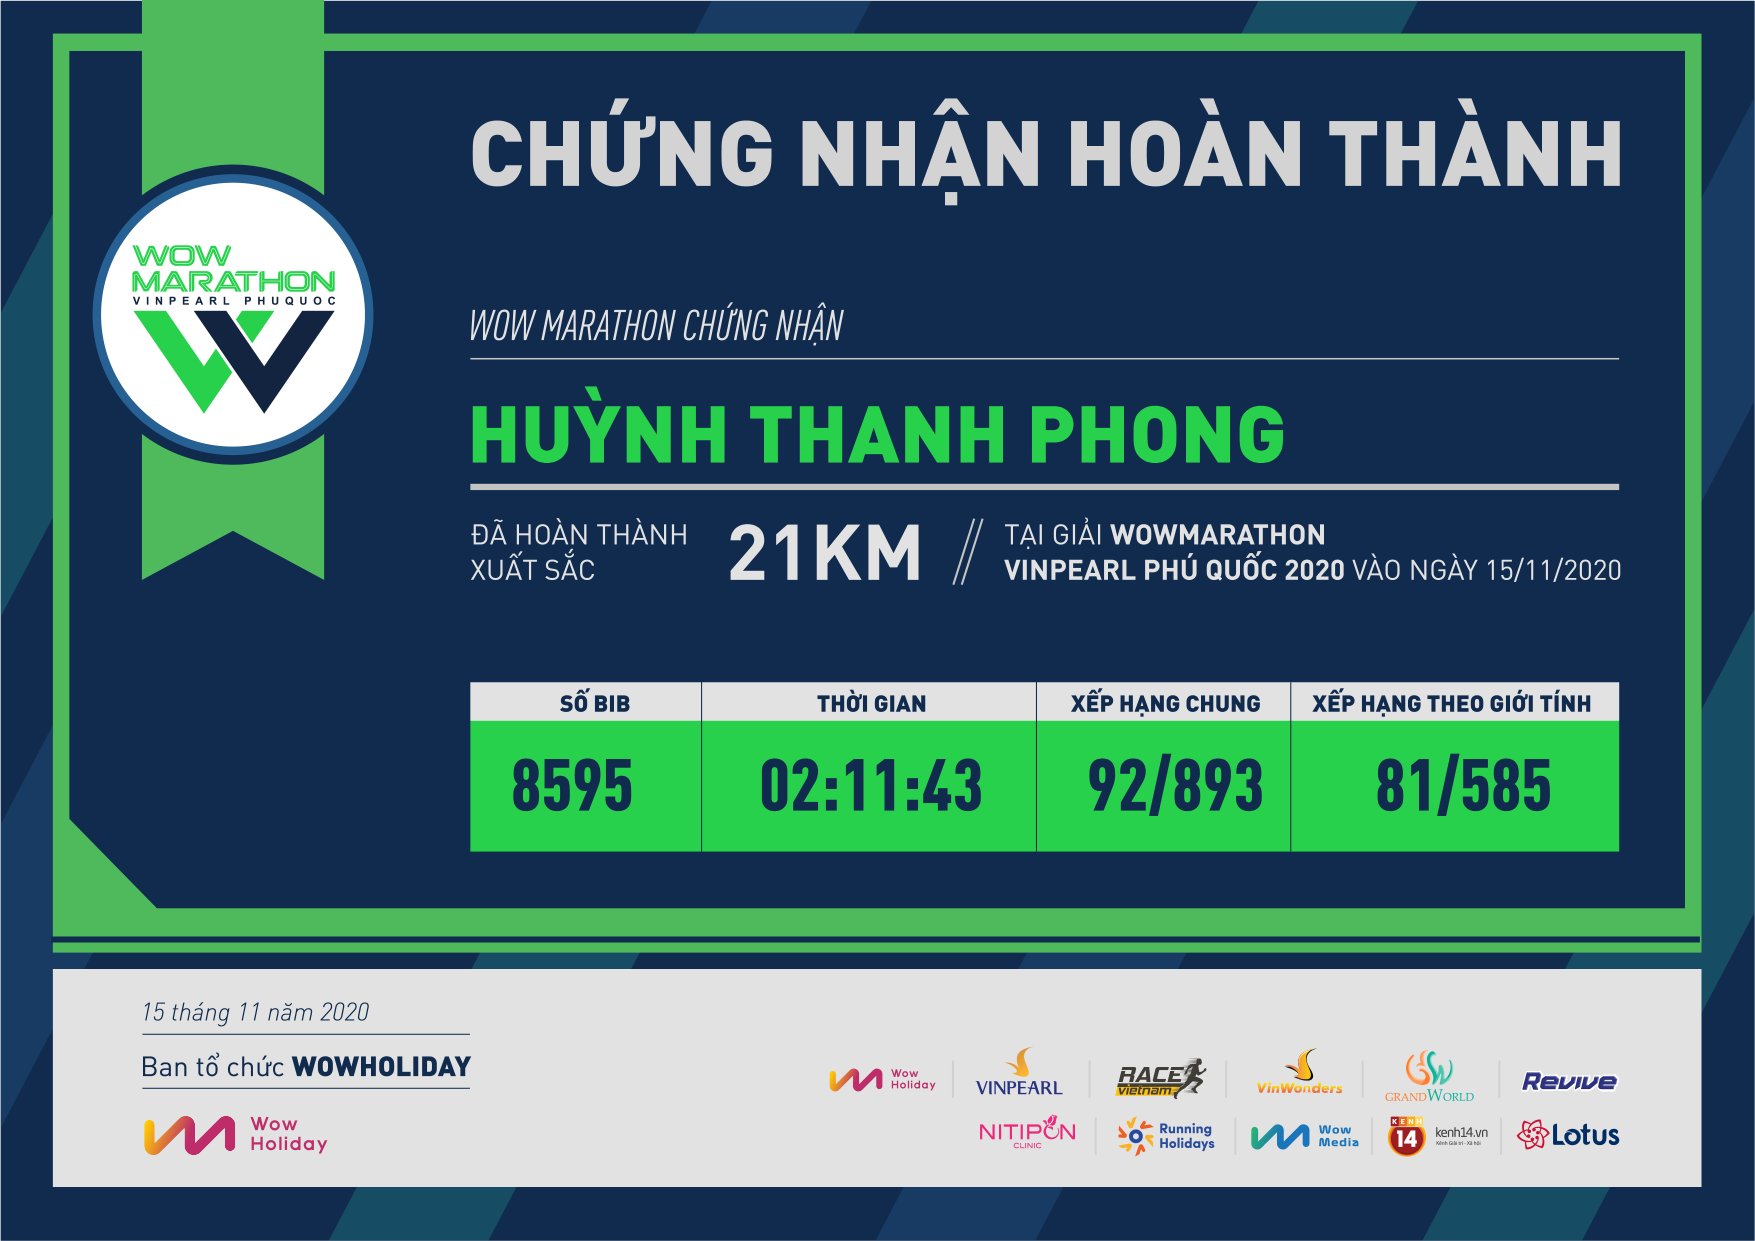 8595 - Huỳnh Thanh Phong